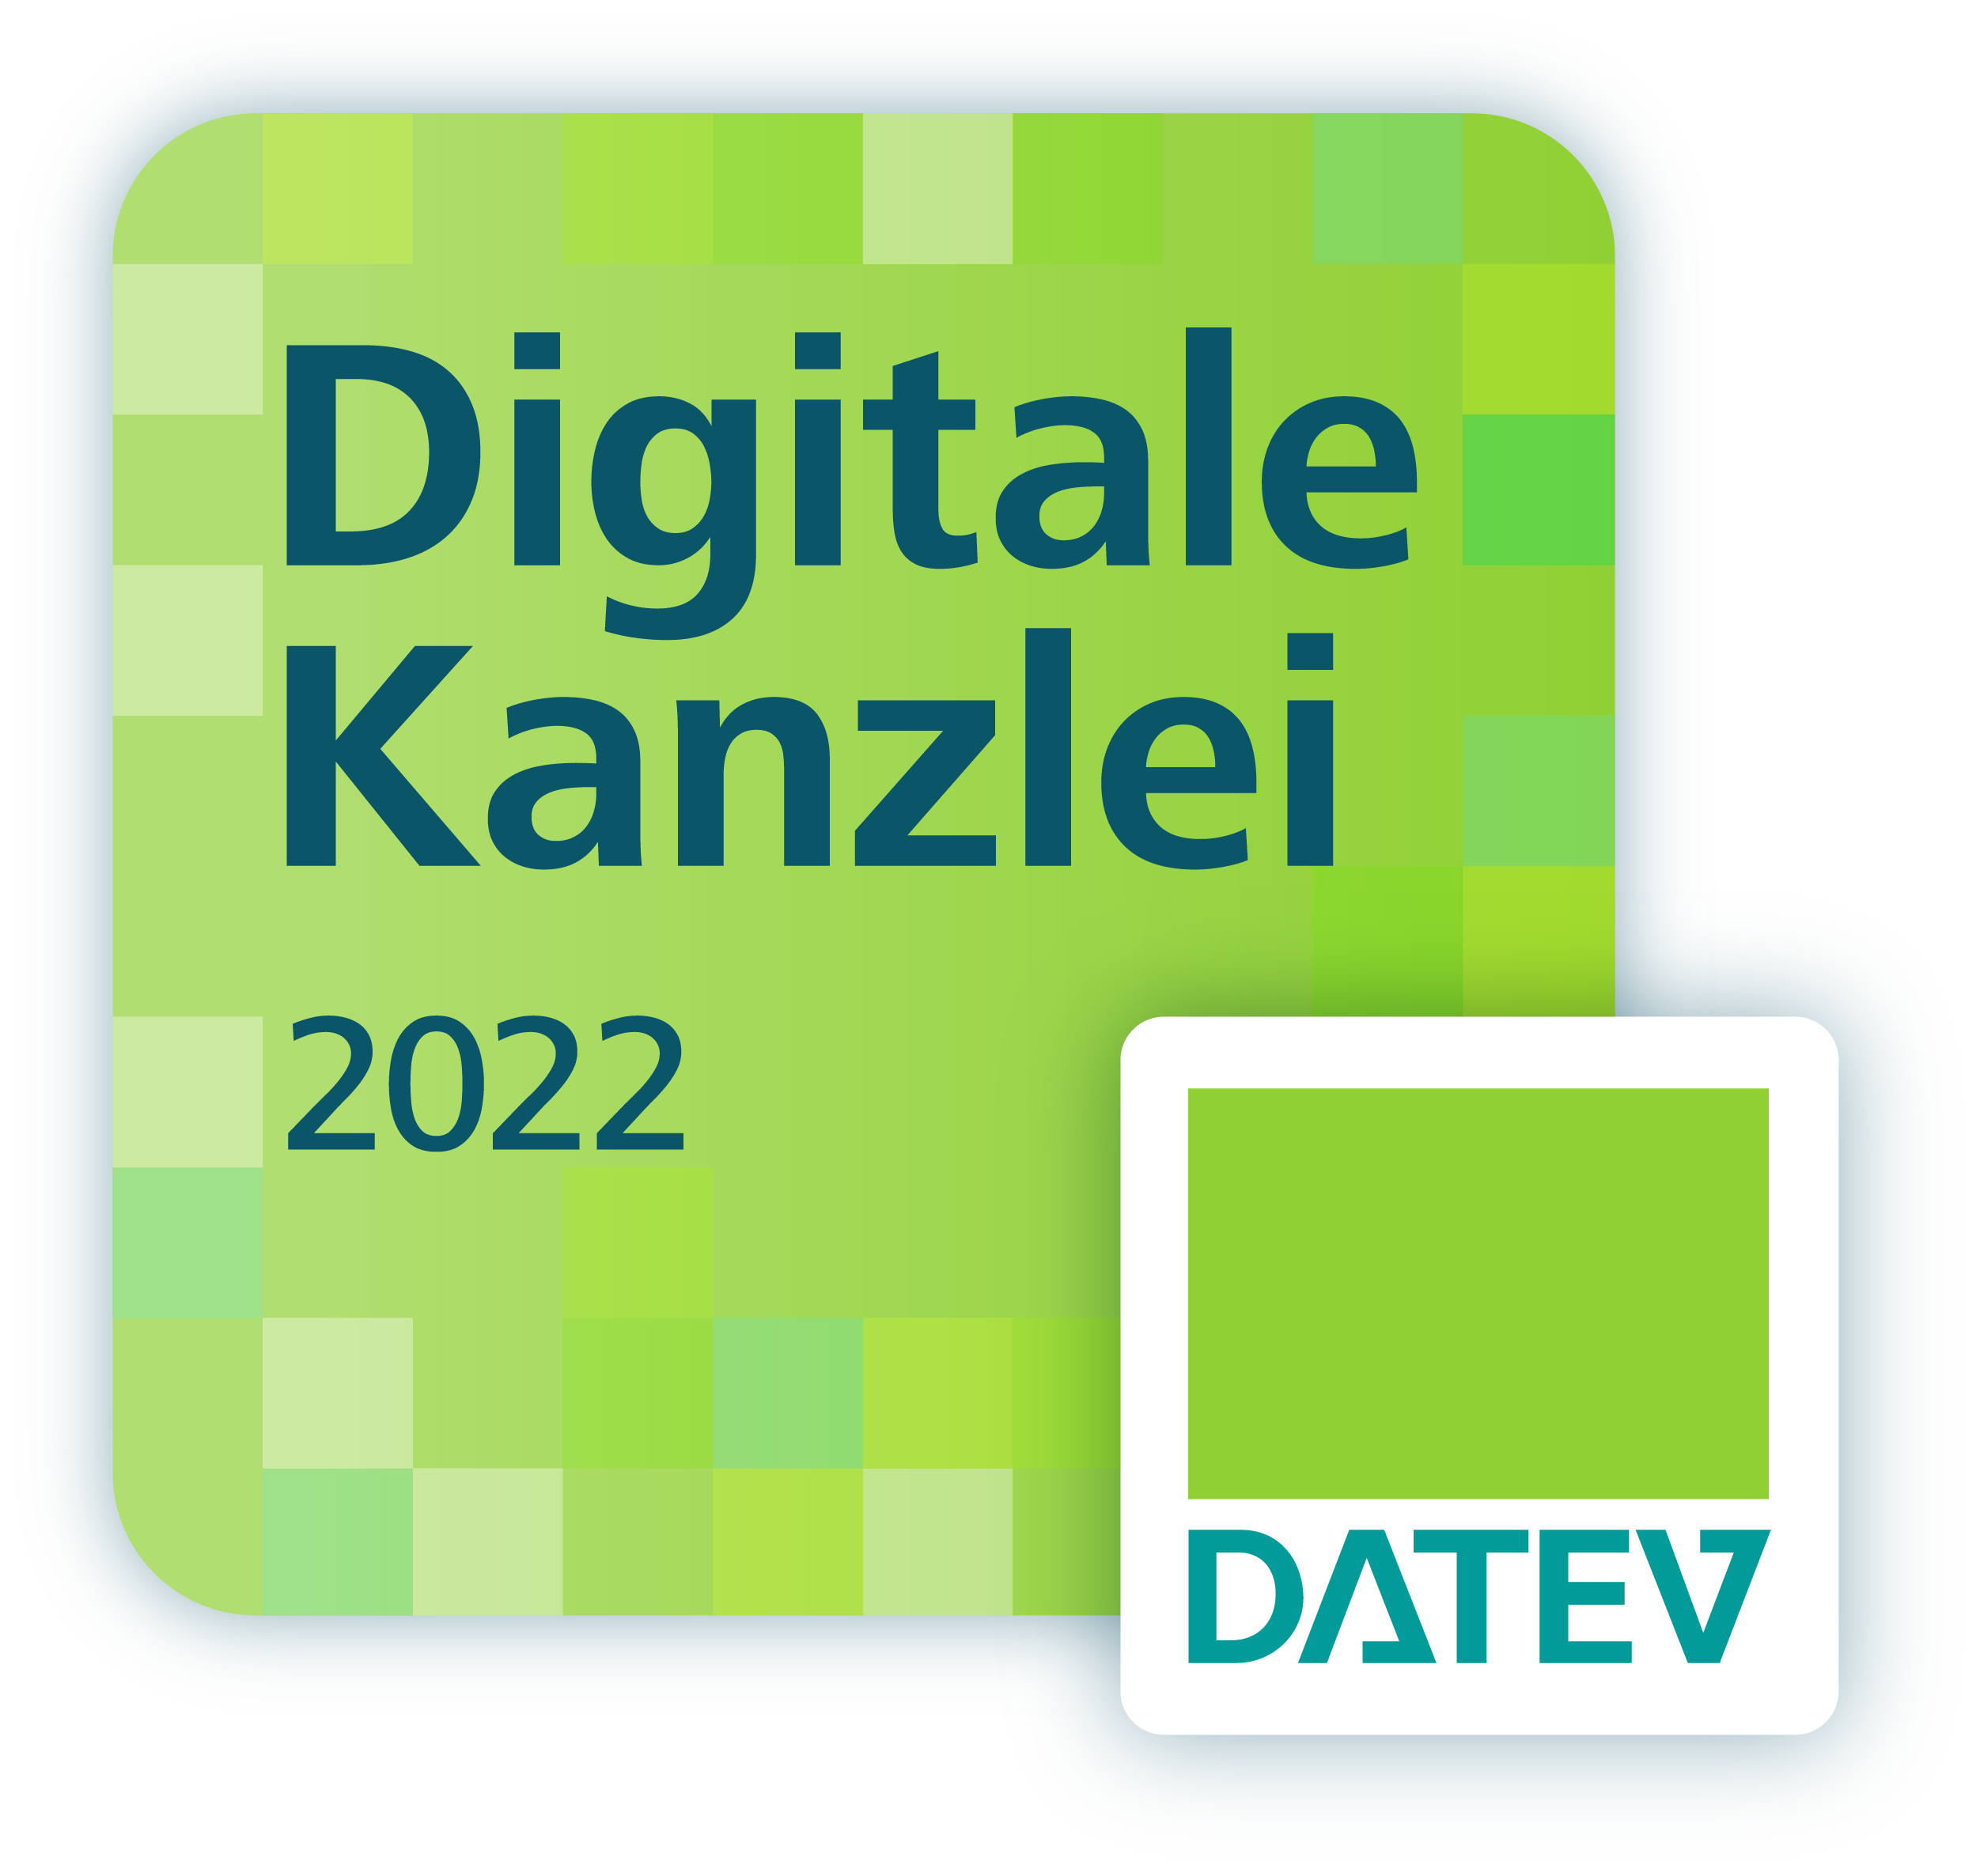 Digitale Kanzlei 2021